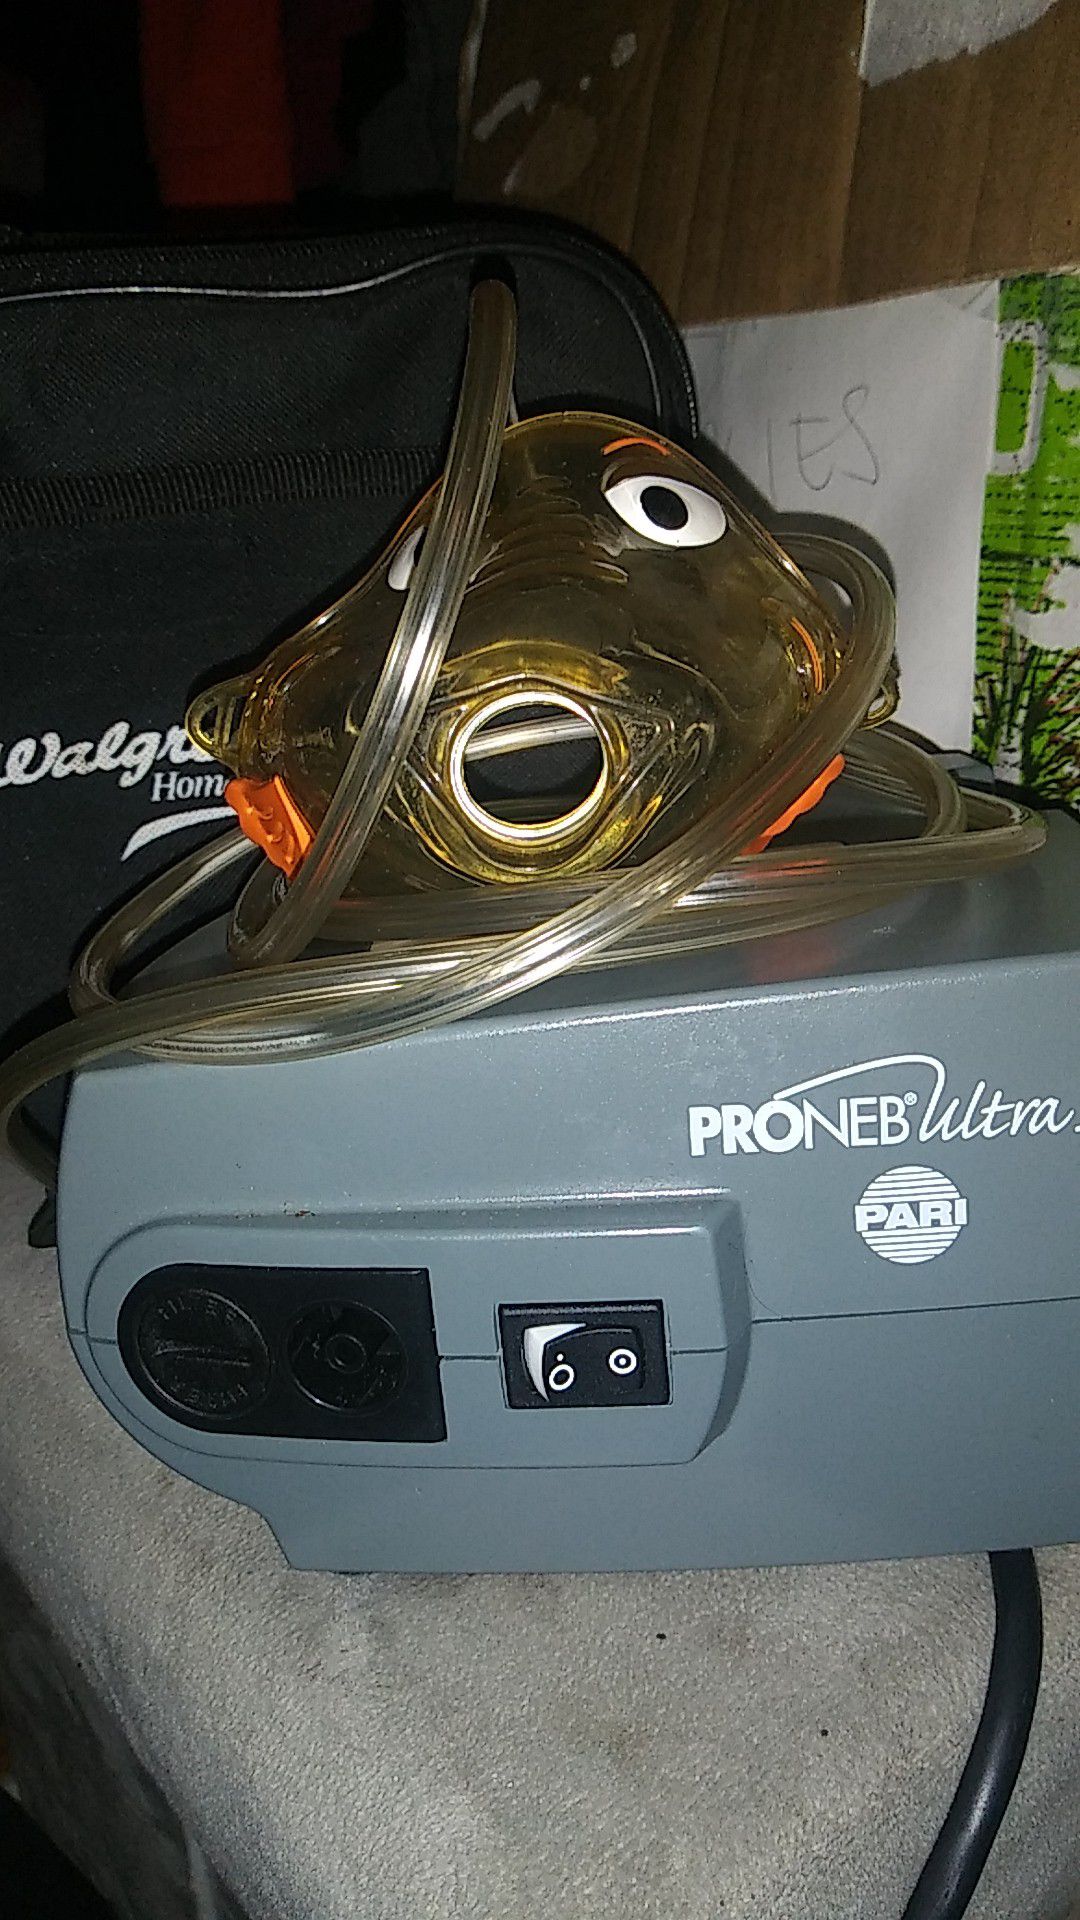 PRONEB Ultra2 Nebulizer\Compressor 10$